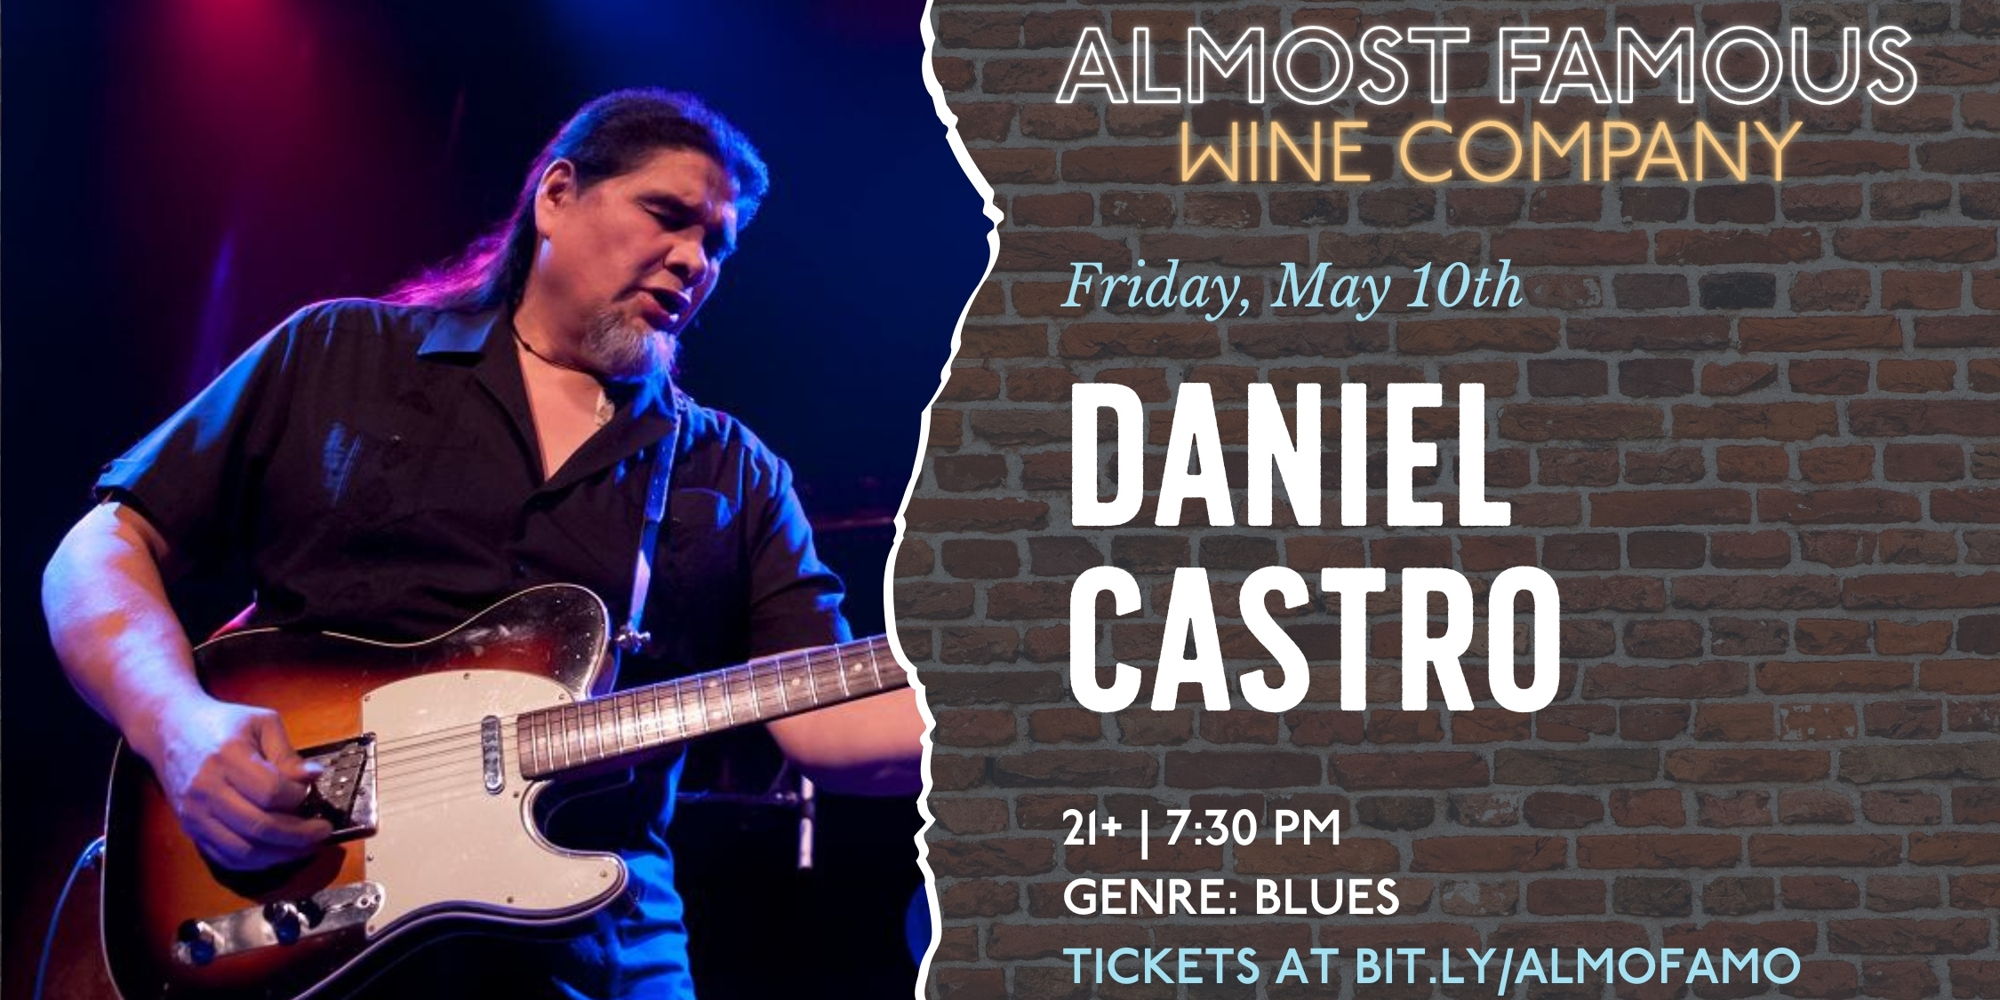 Fan-favorite blues guitarist Daniel Castro returns to Almost Famous promotional image